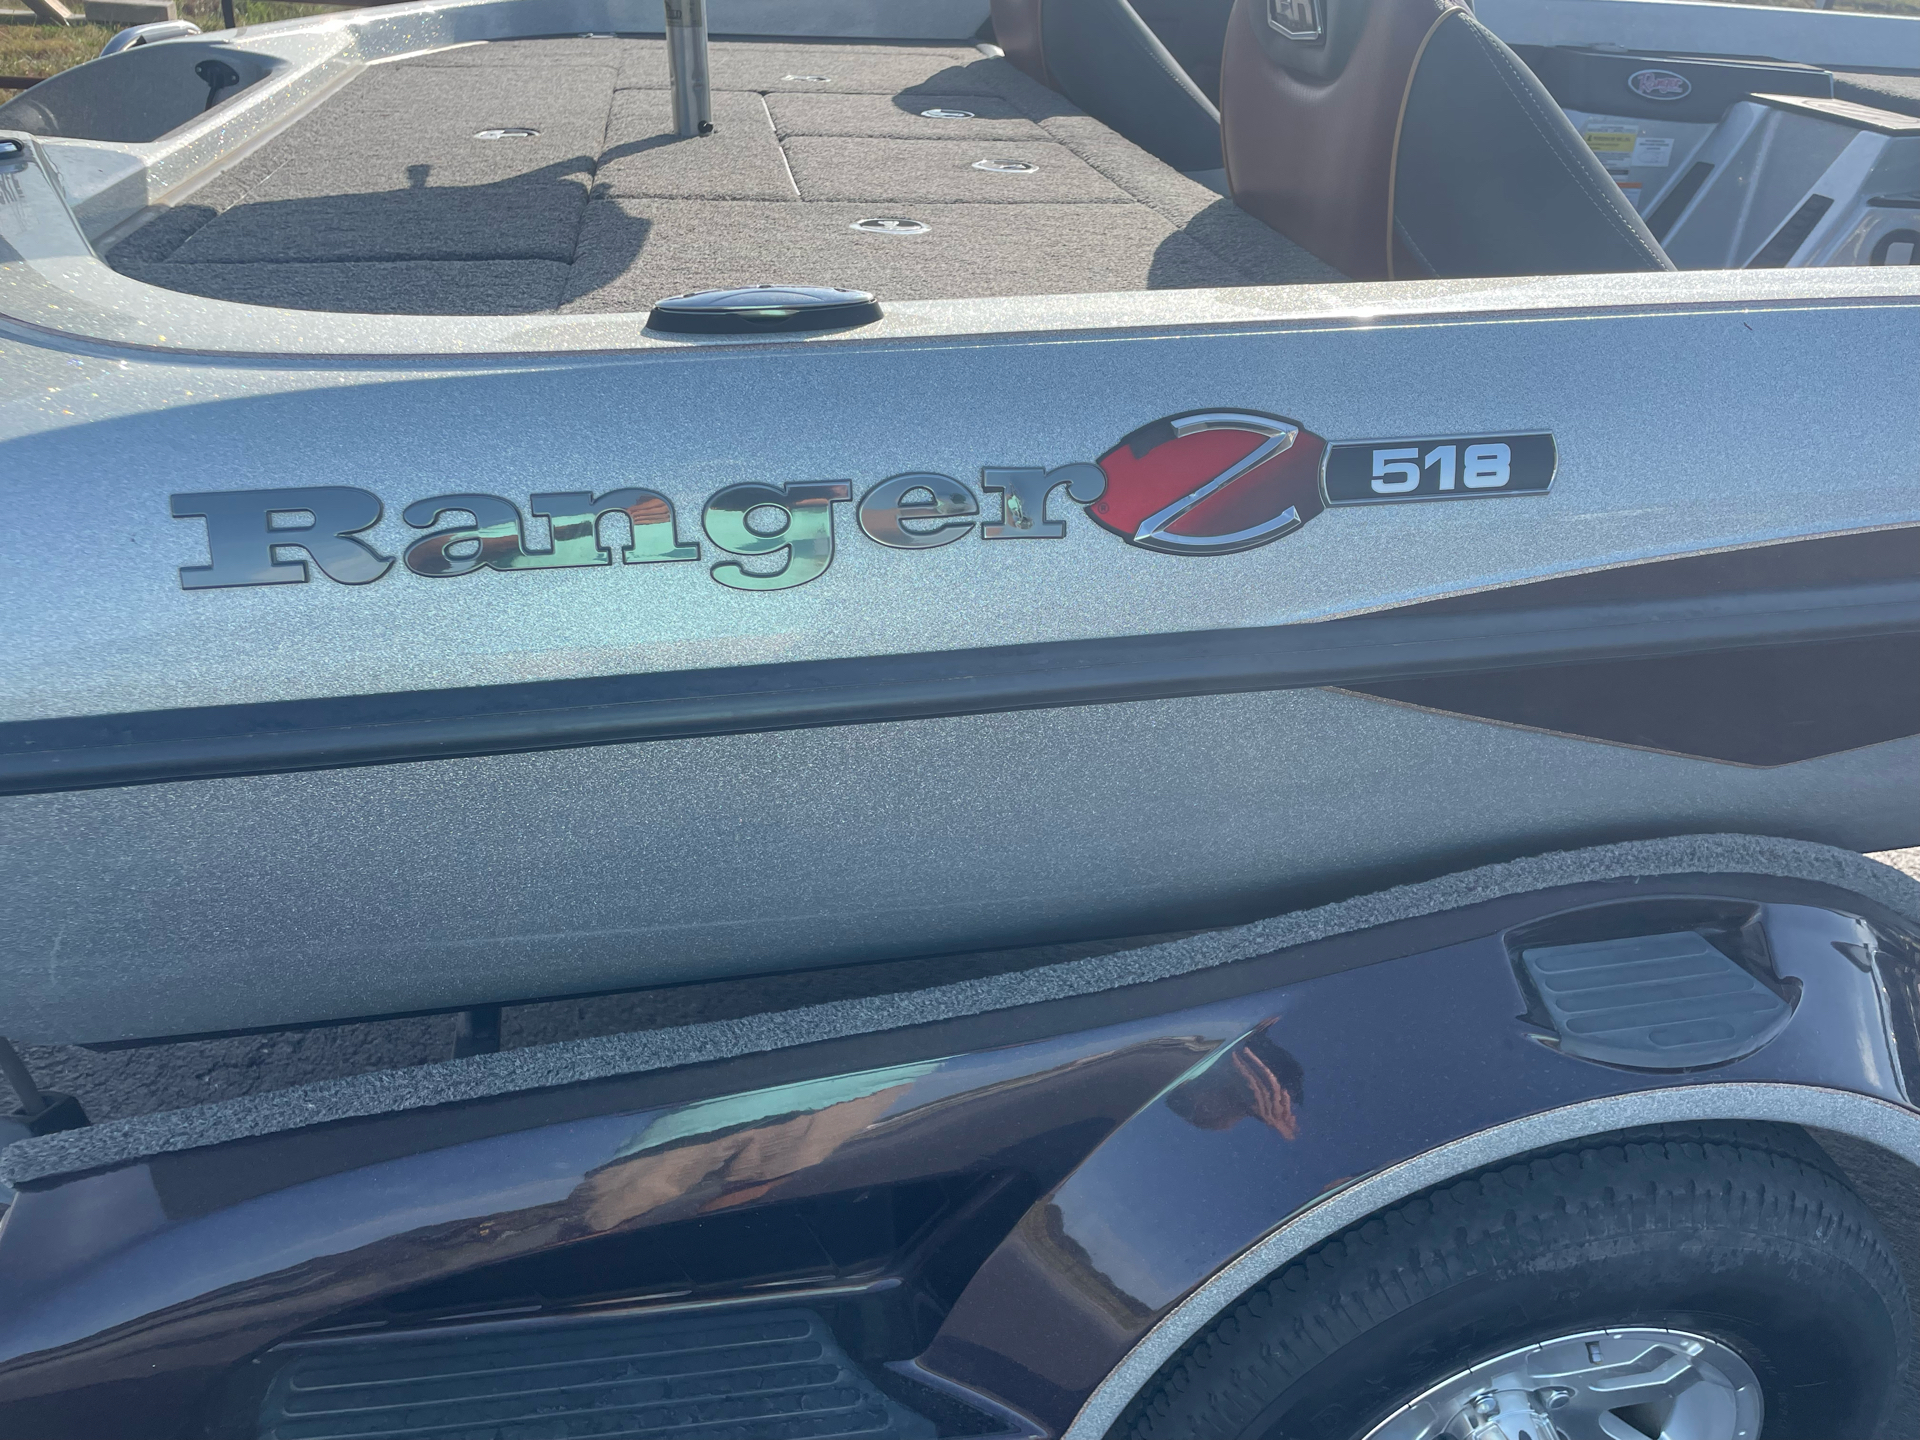 2018 Ranger 518 in Bolivar, Missouri - Photo 3